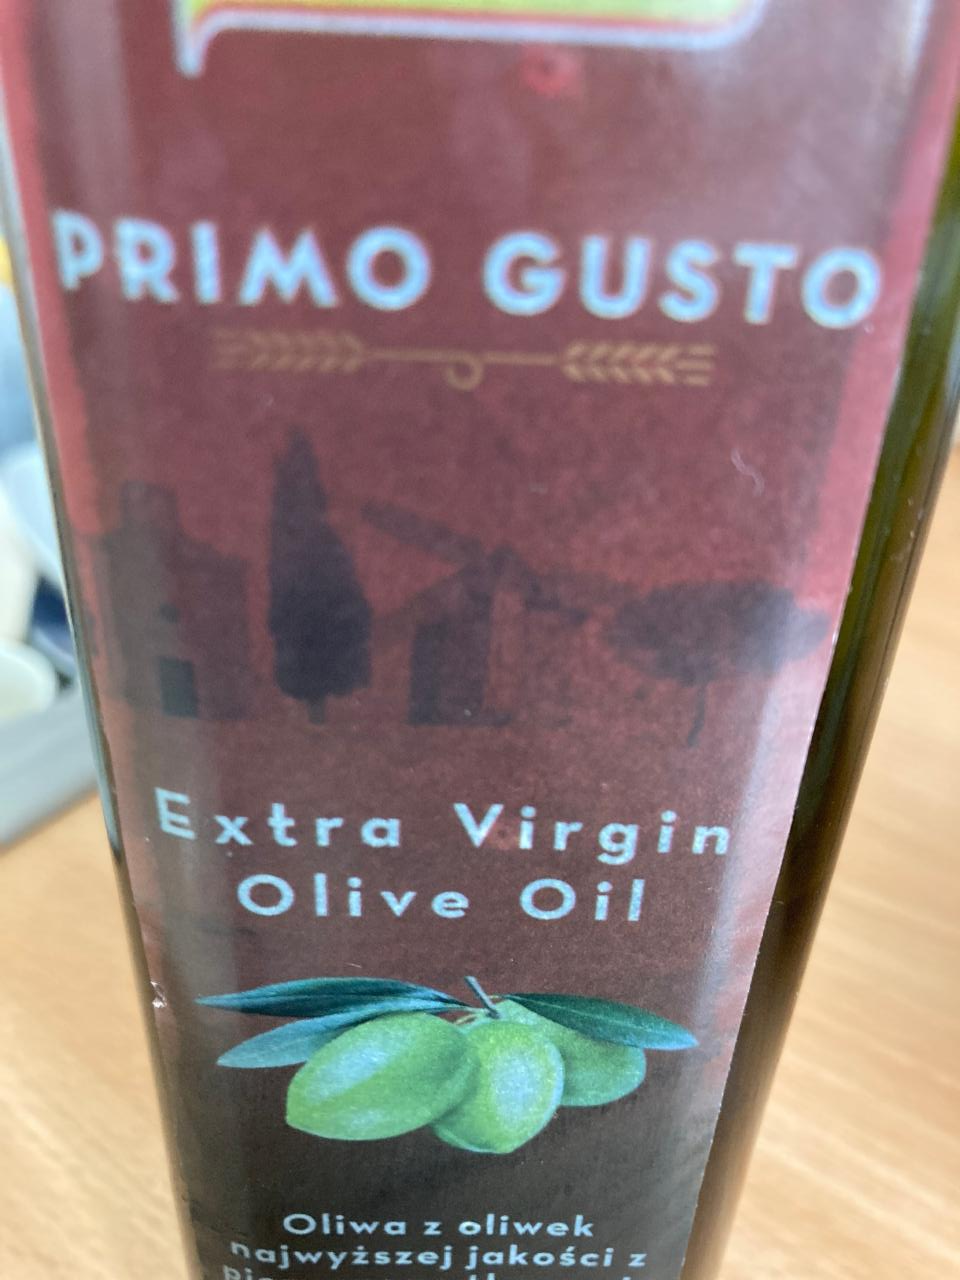 Zdjęcia - Primo Gusto Oliwa z oliwek najwyższej jakości z pierwszego tłoczenia 500 ml